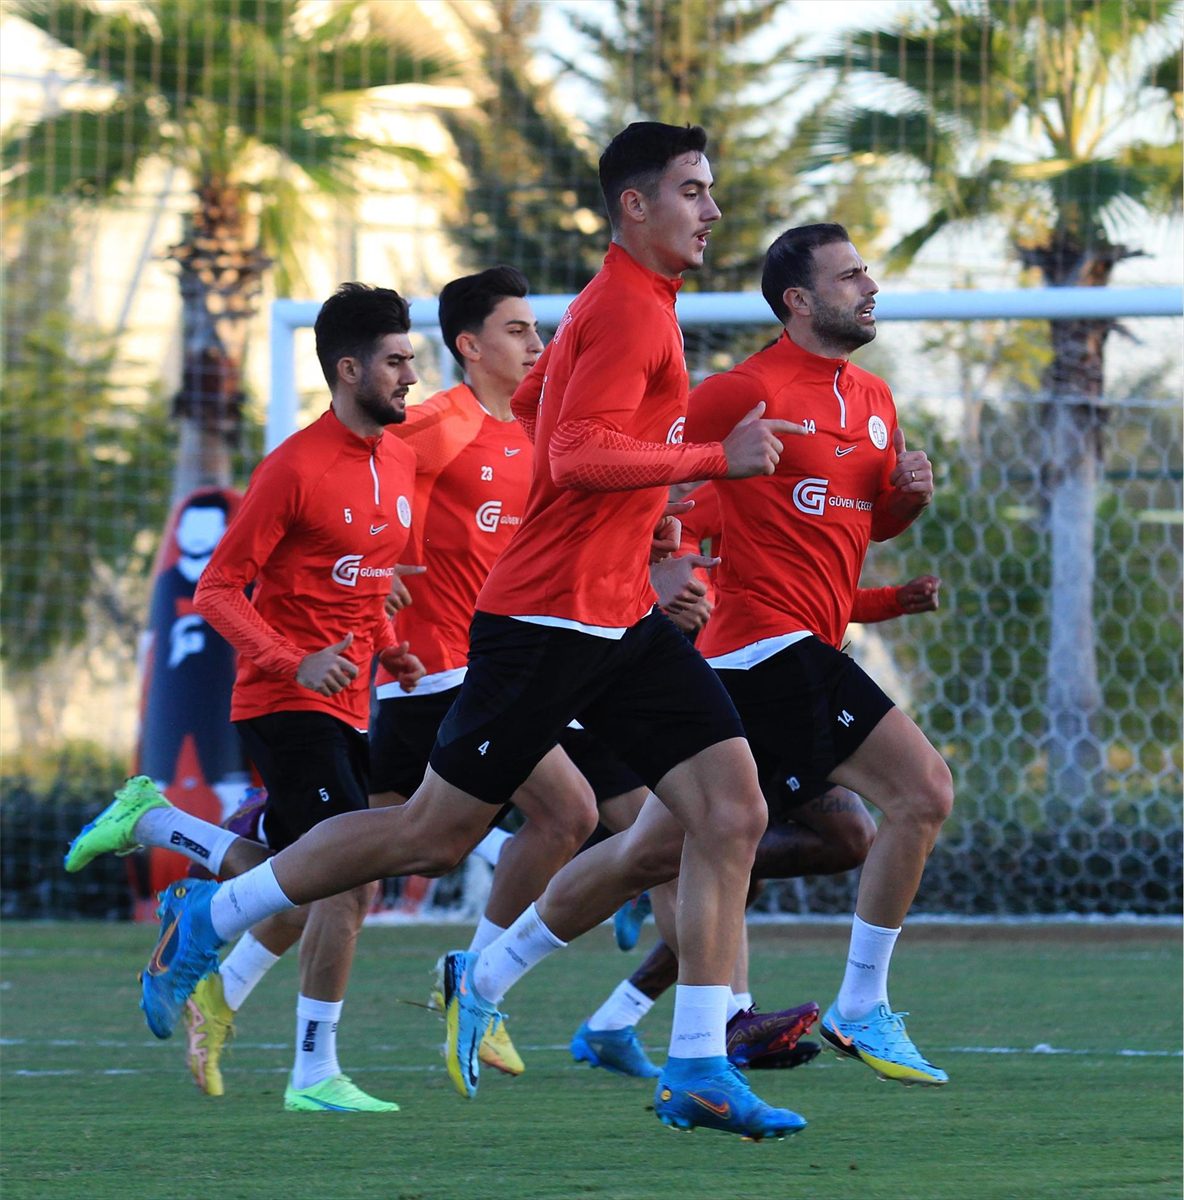 Antalyaspor, Fatih Karagümrük maçının hazırlıklarına başladı